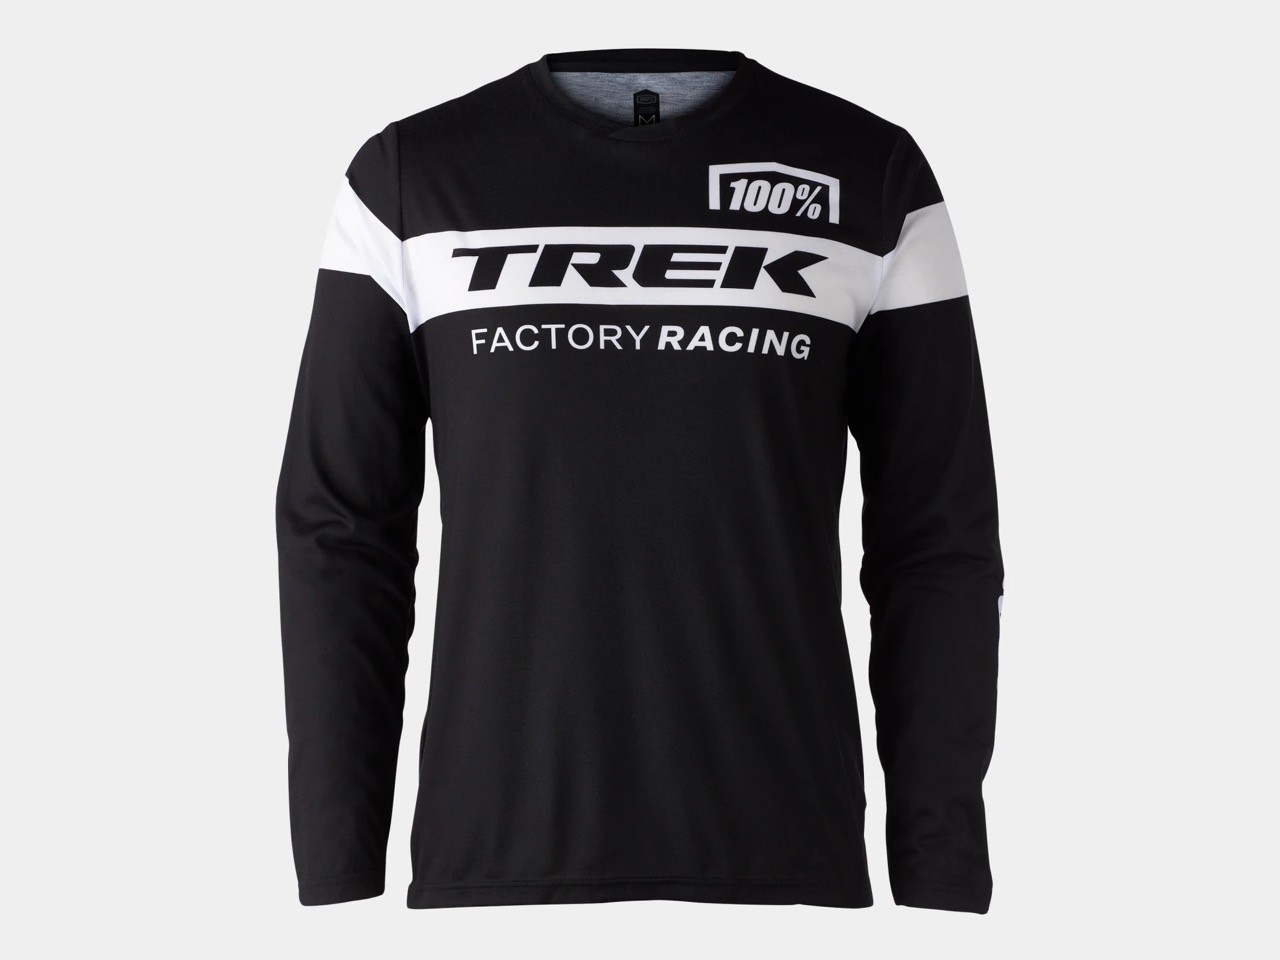 Triko Funkční s dlohými rukávy 100% Trek Factory Racing